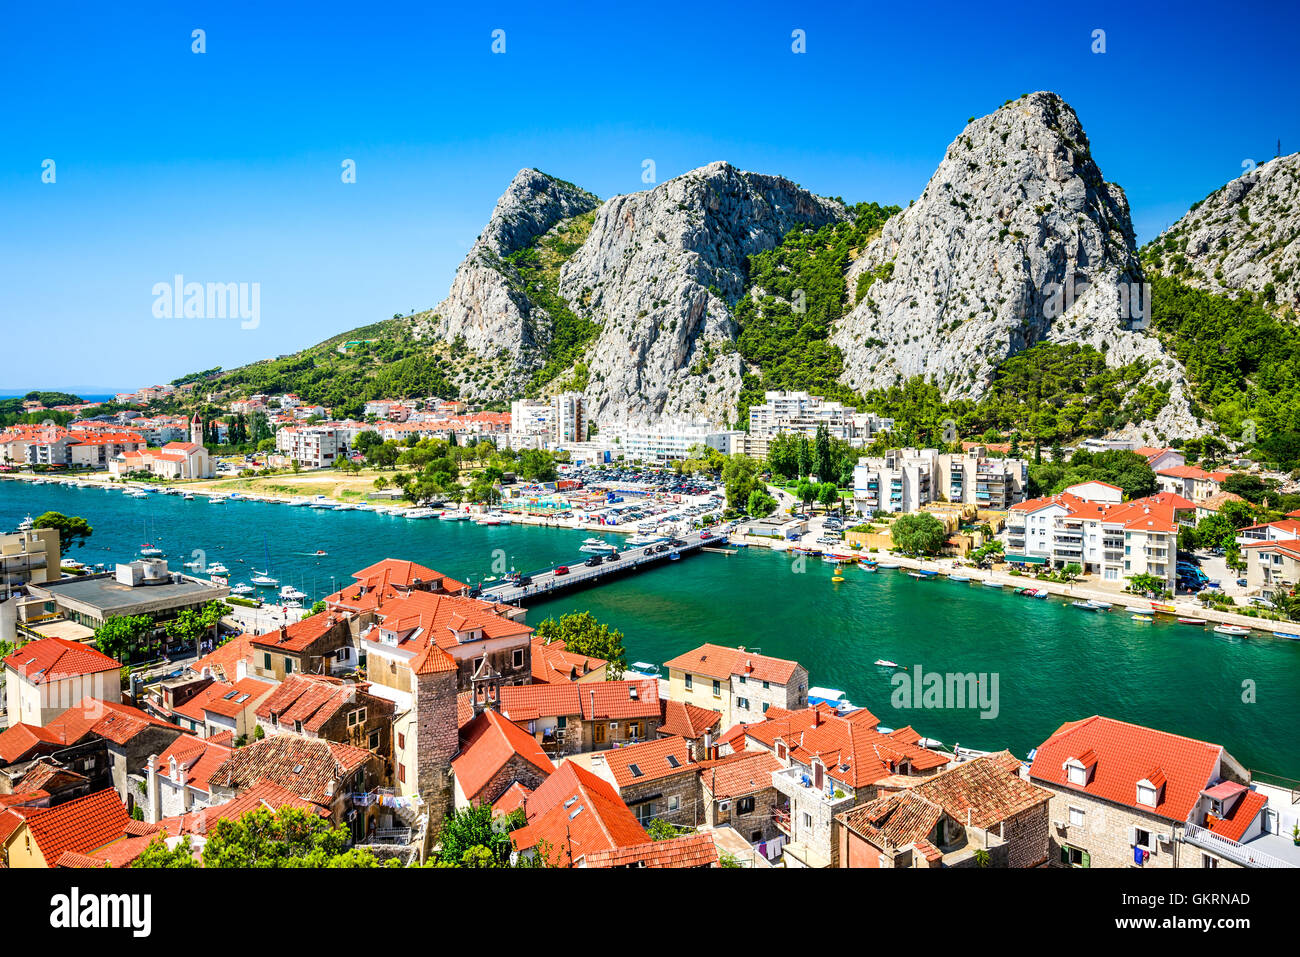 Omis, Croatie. Panorama de la côte toscane avec vert émeraude de la rivière Cetina, à l'historique de voyage Croatie Mer Adriatique. Banque D'Images